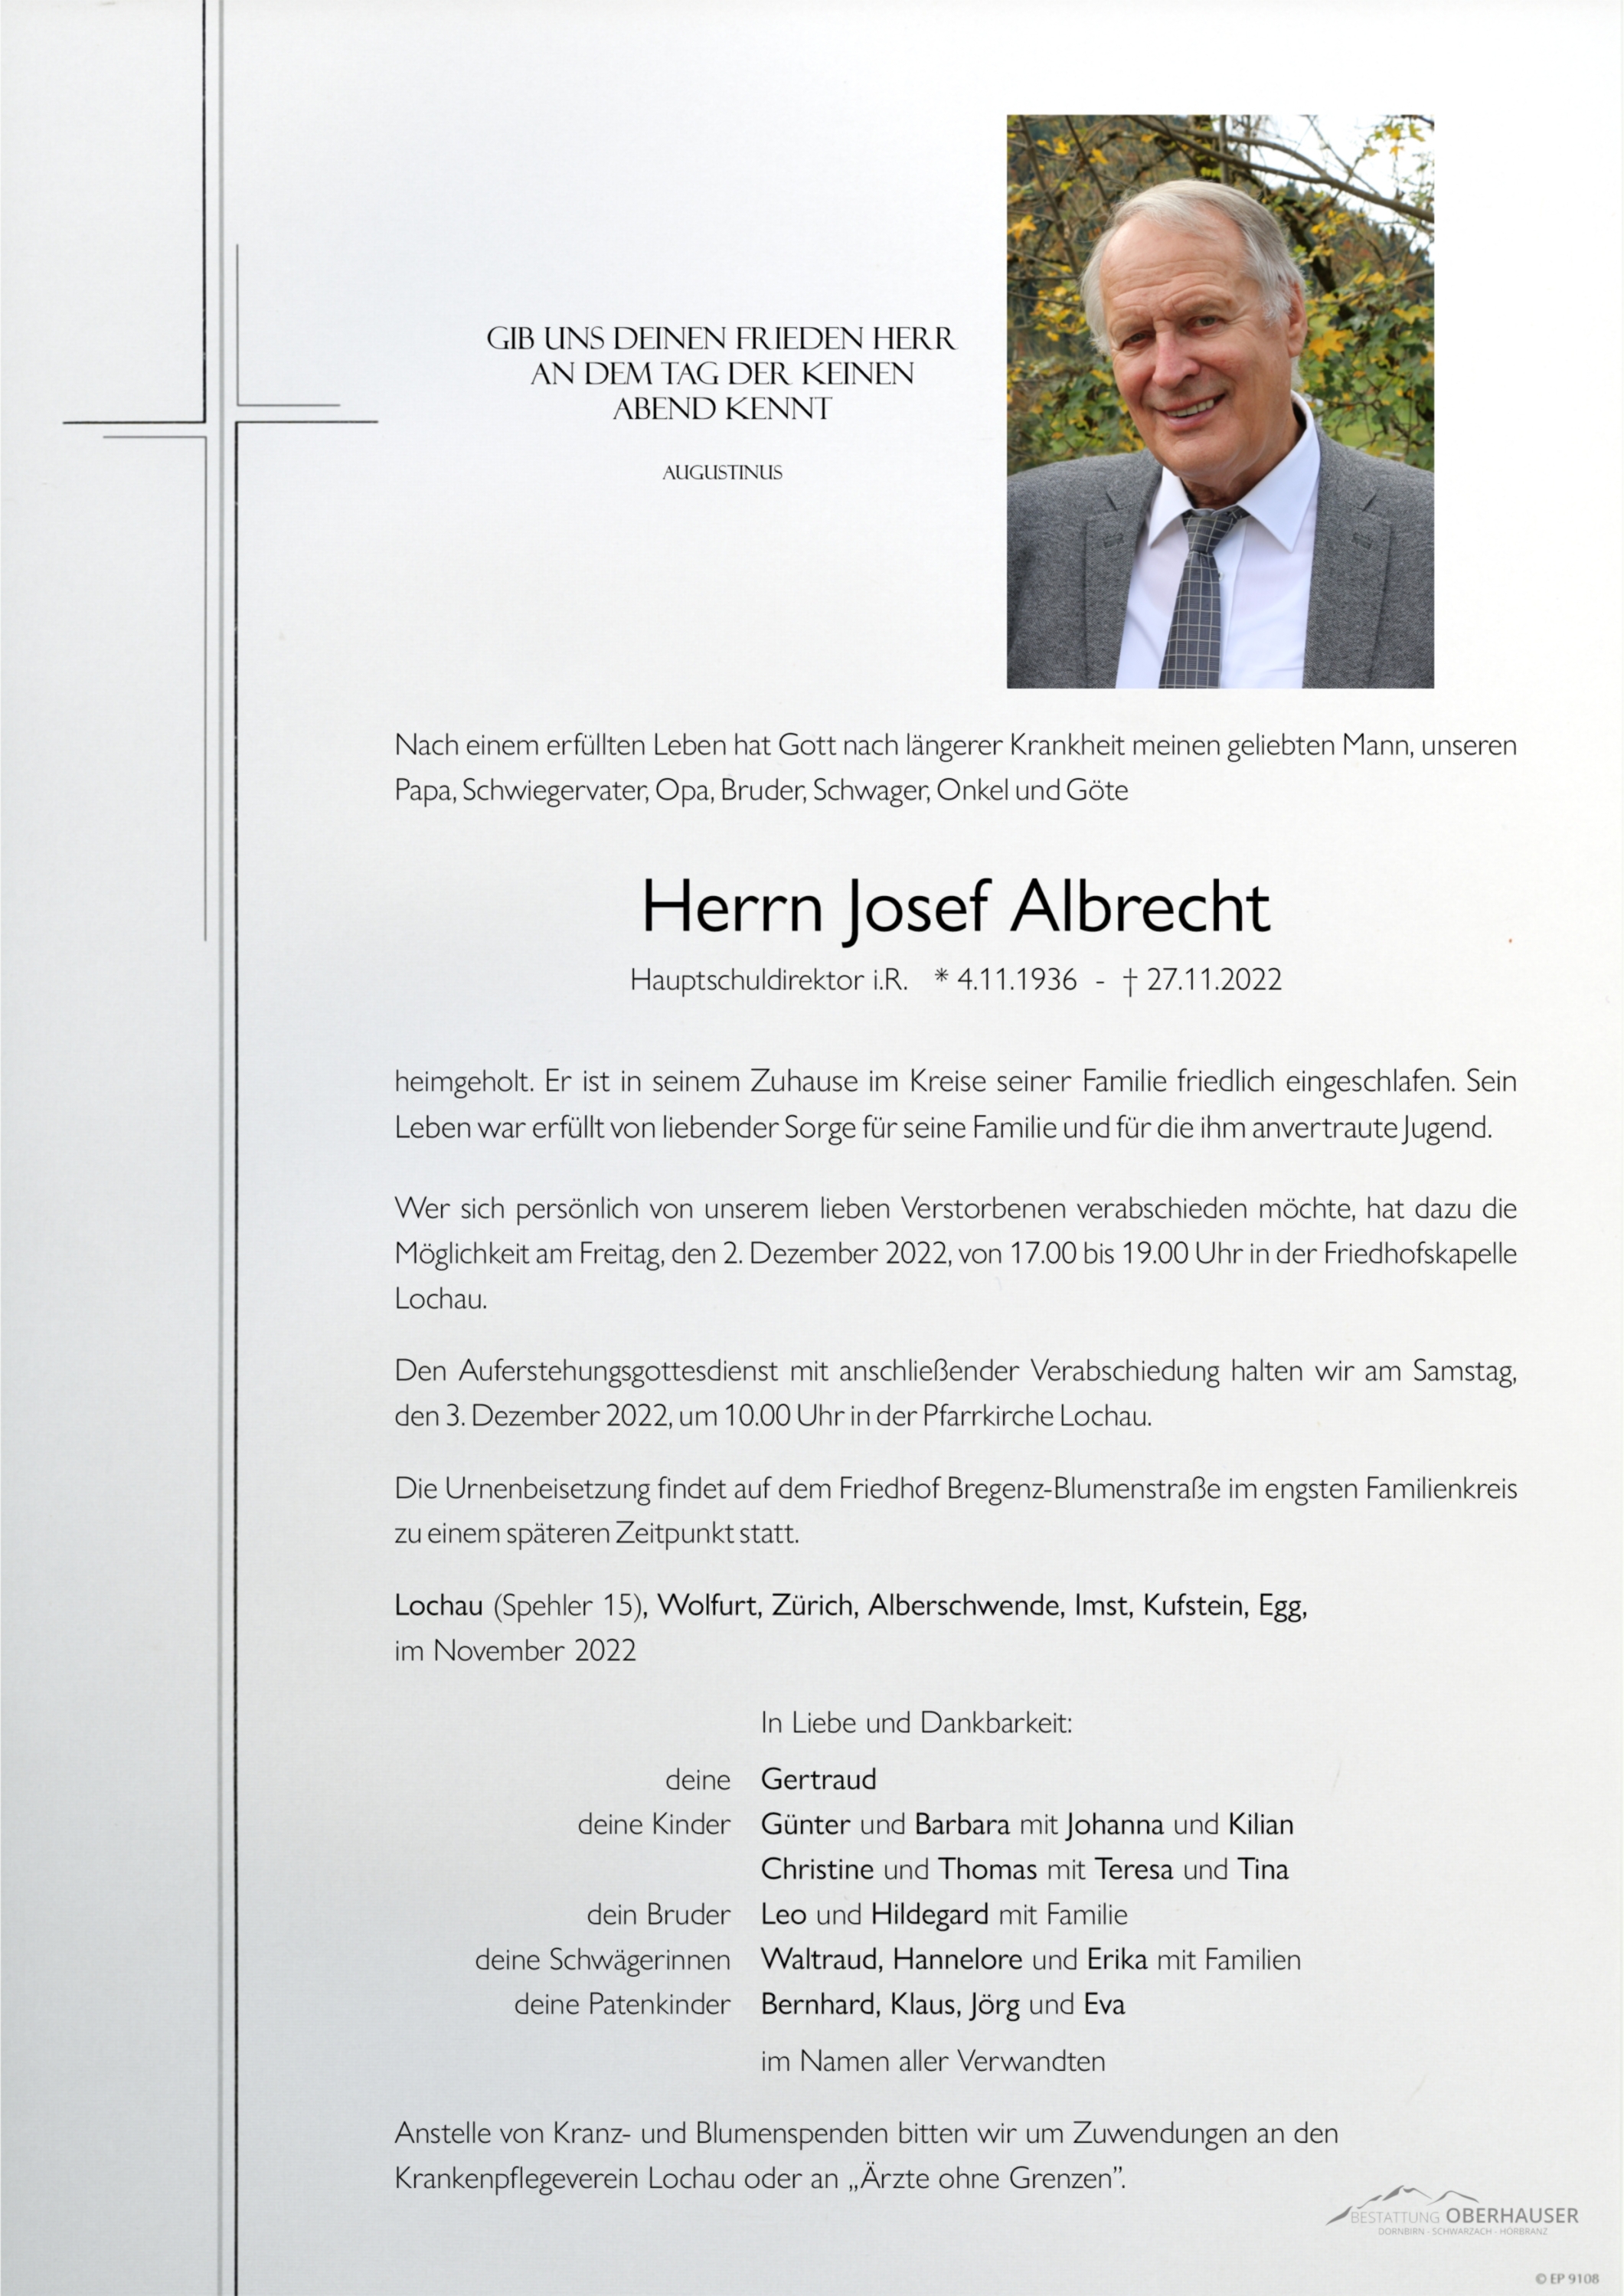 Josef Albrecht